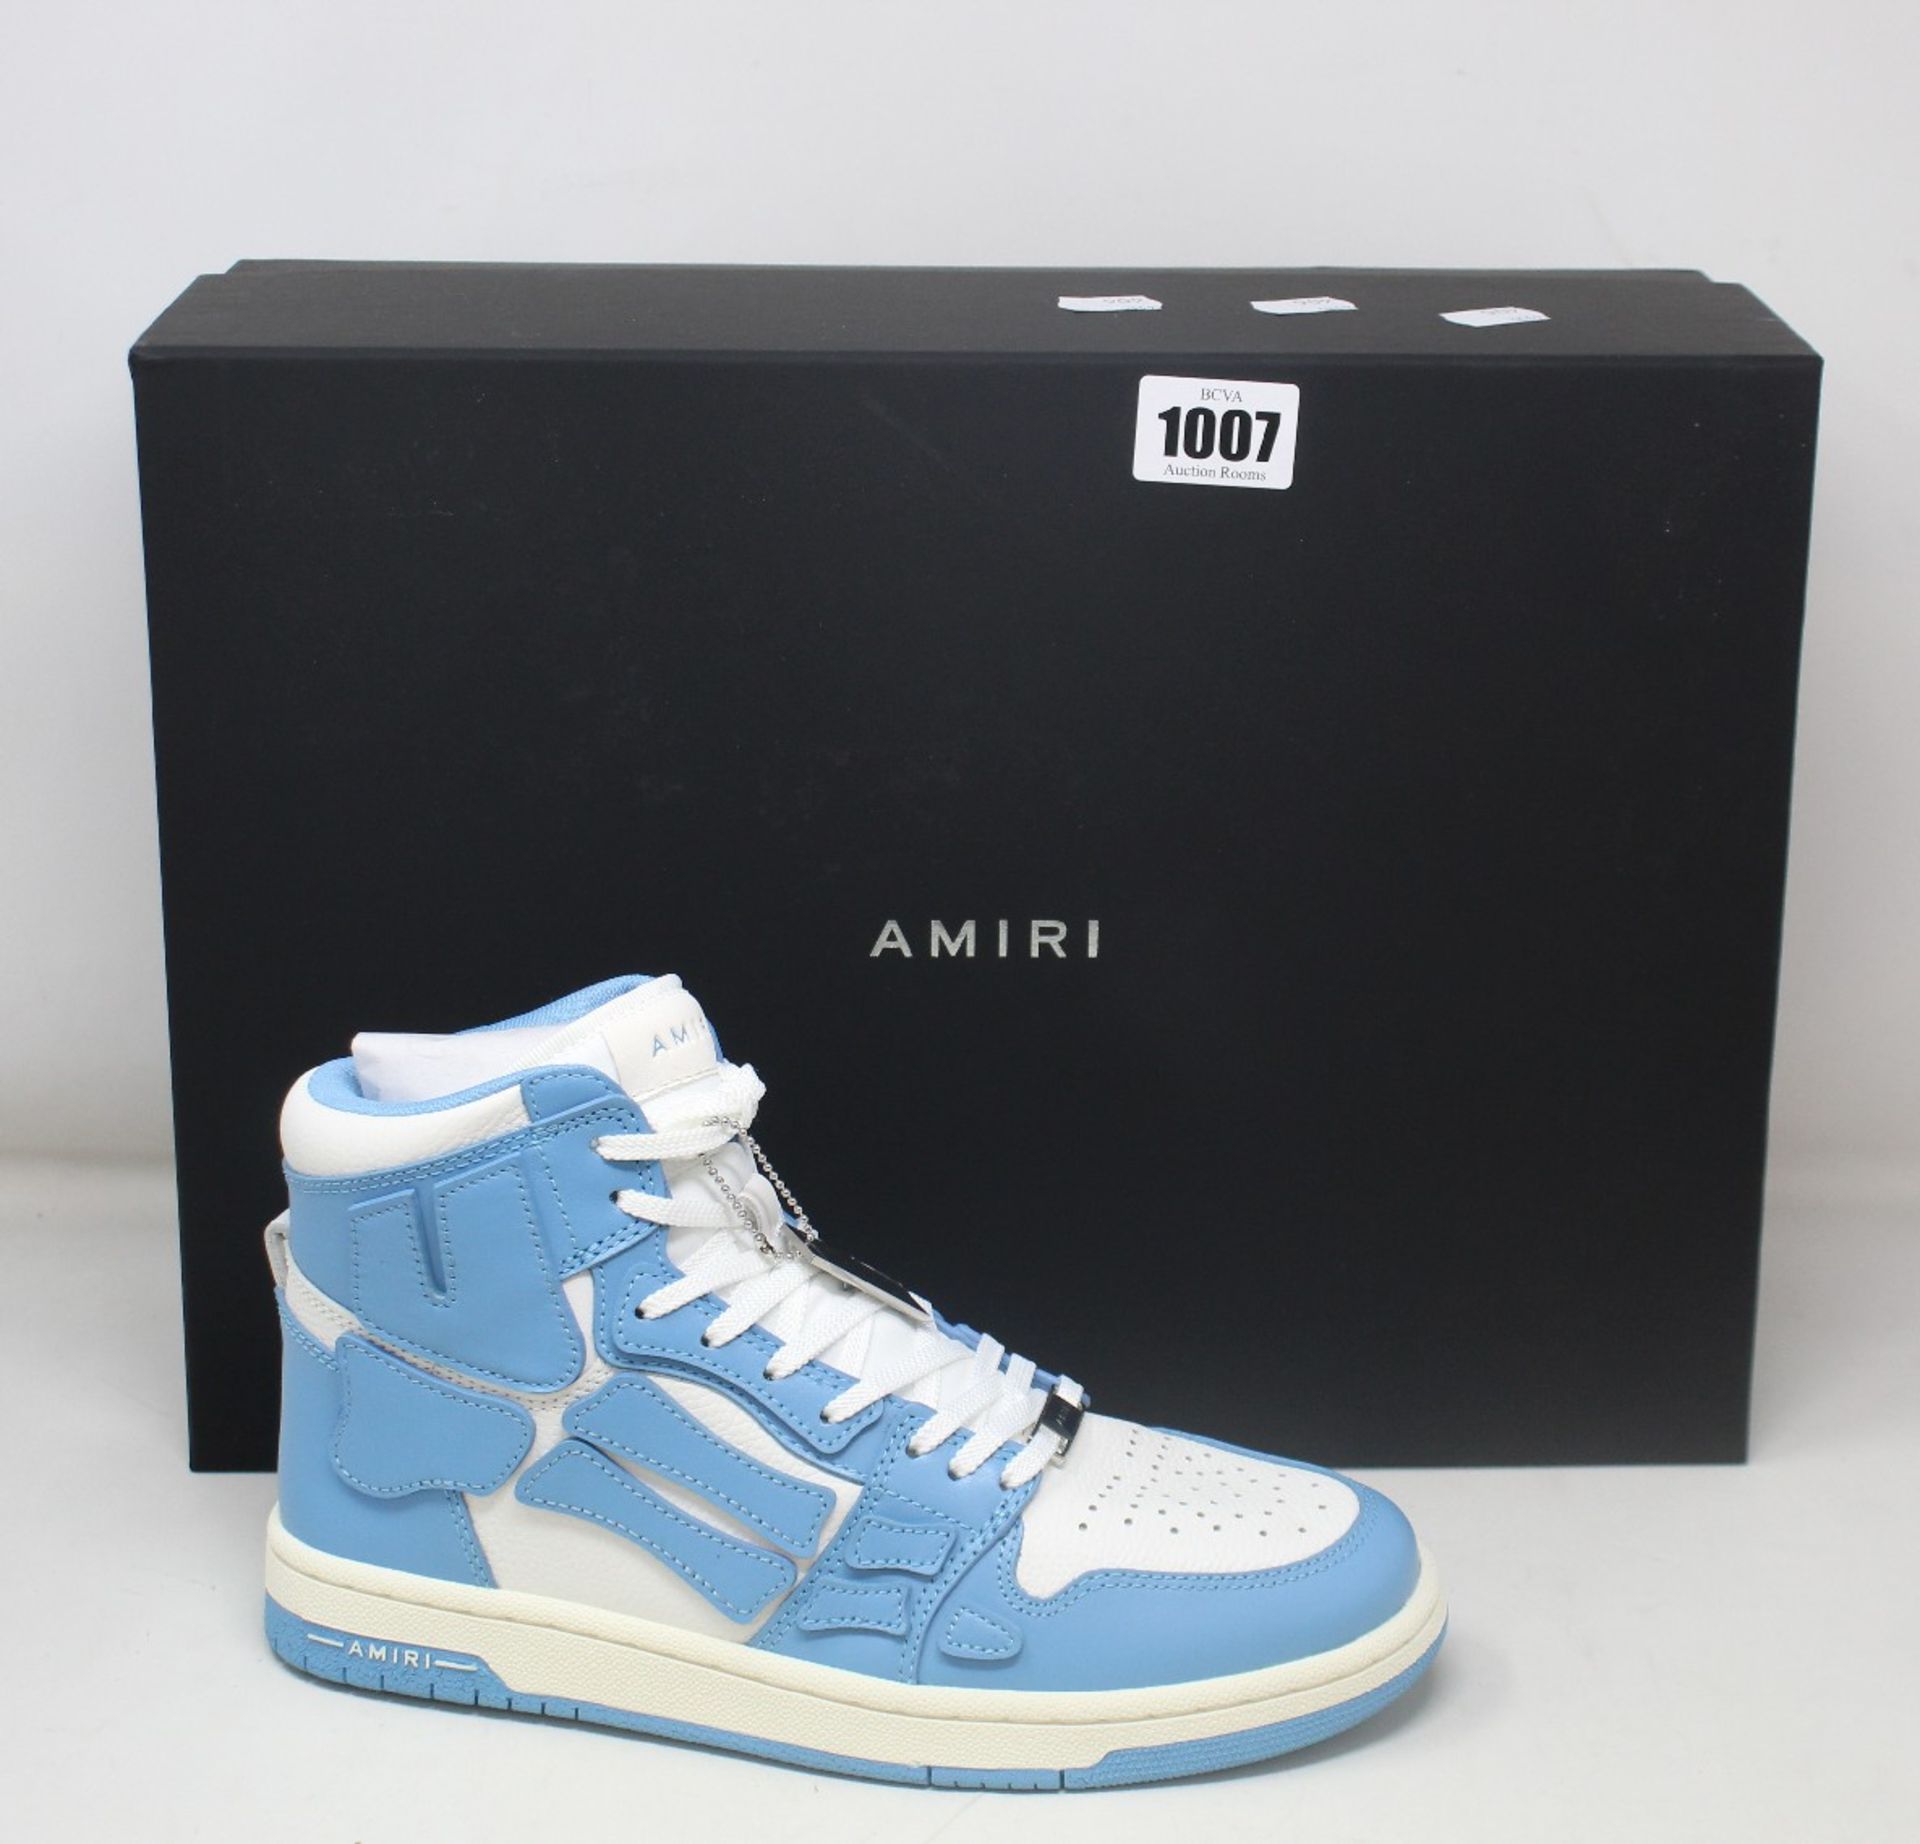 A pair of as new Amiri Skel Top sneakers in powder blue/white (EU 40 - RRP £550).